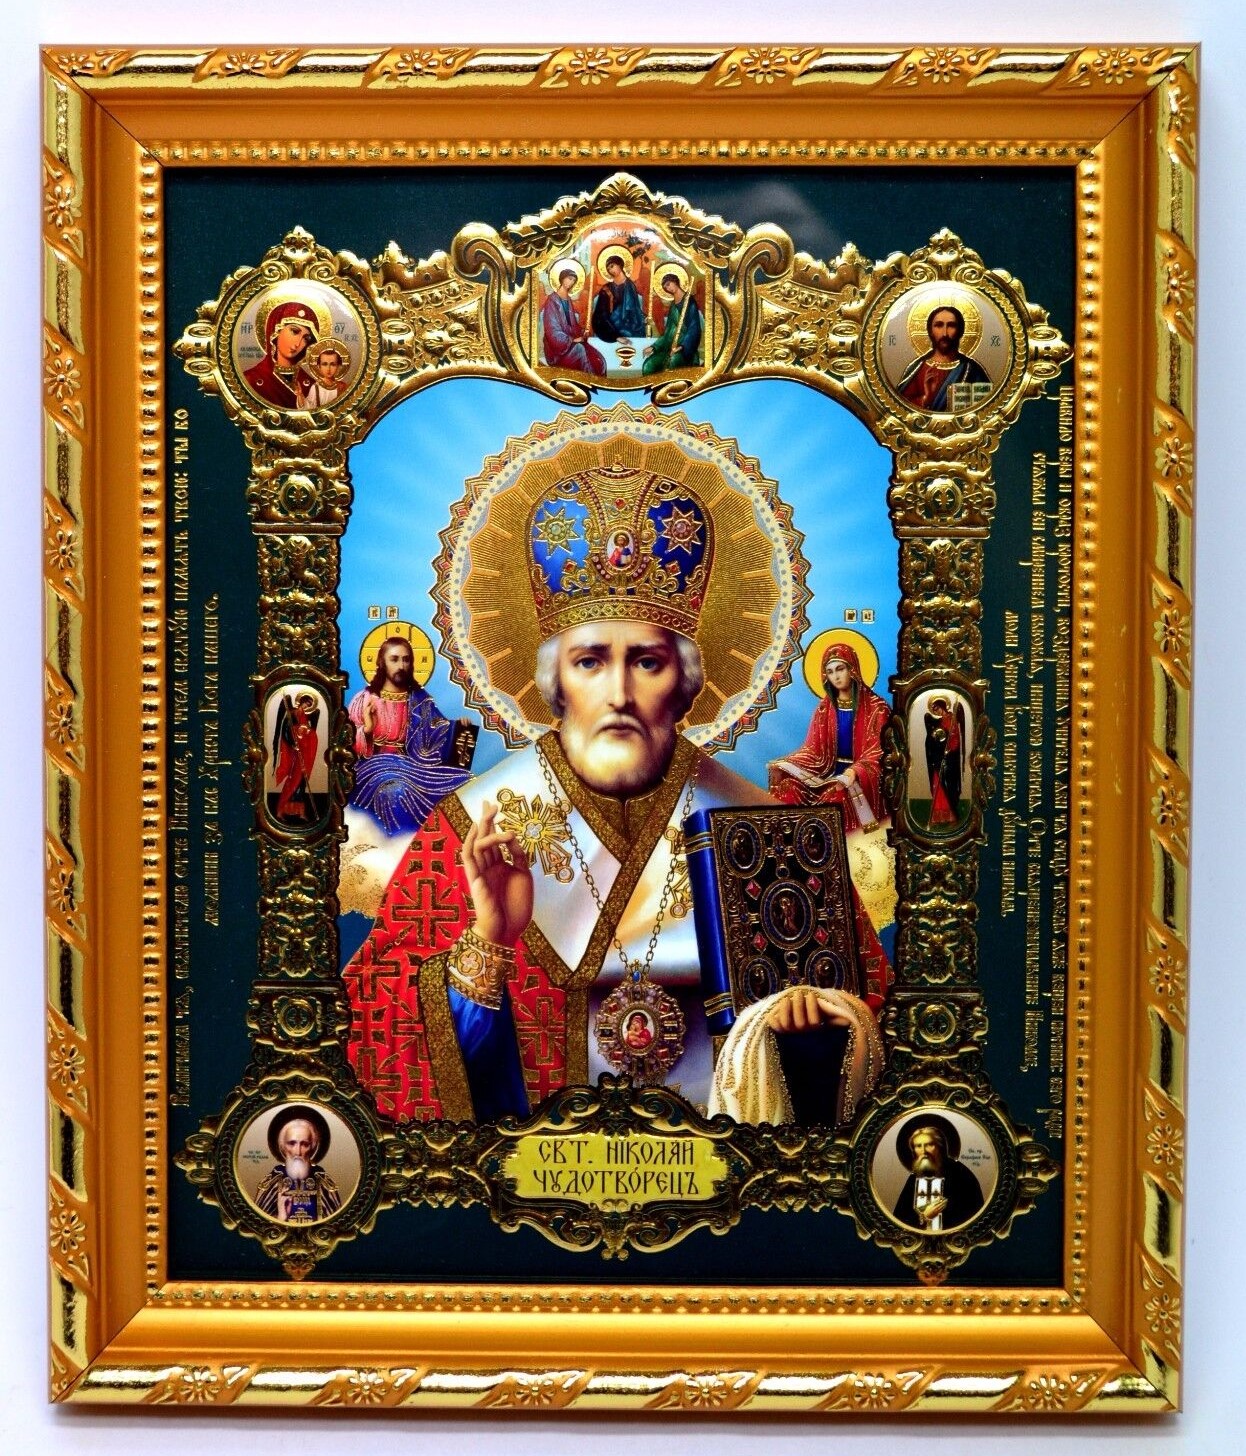 икона святой Николай чудотворец освящена, 10571